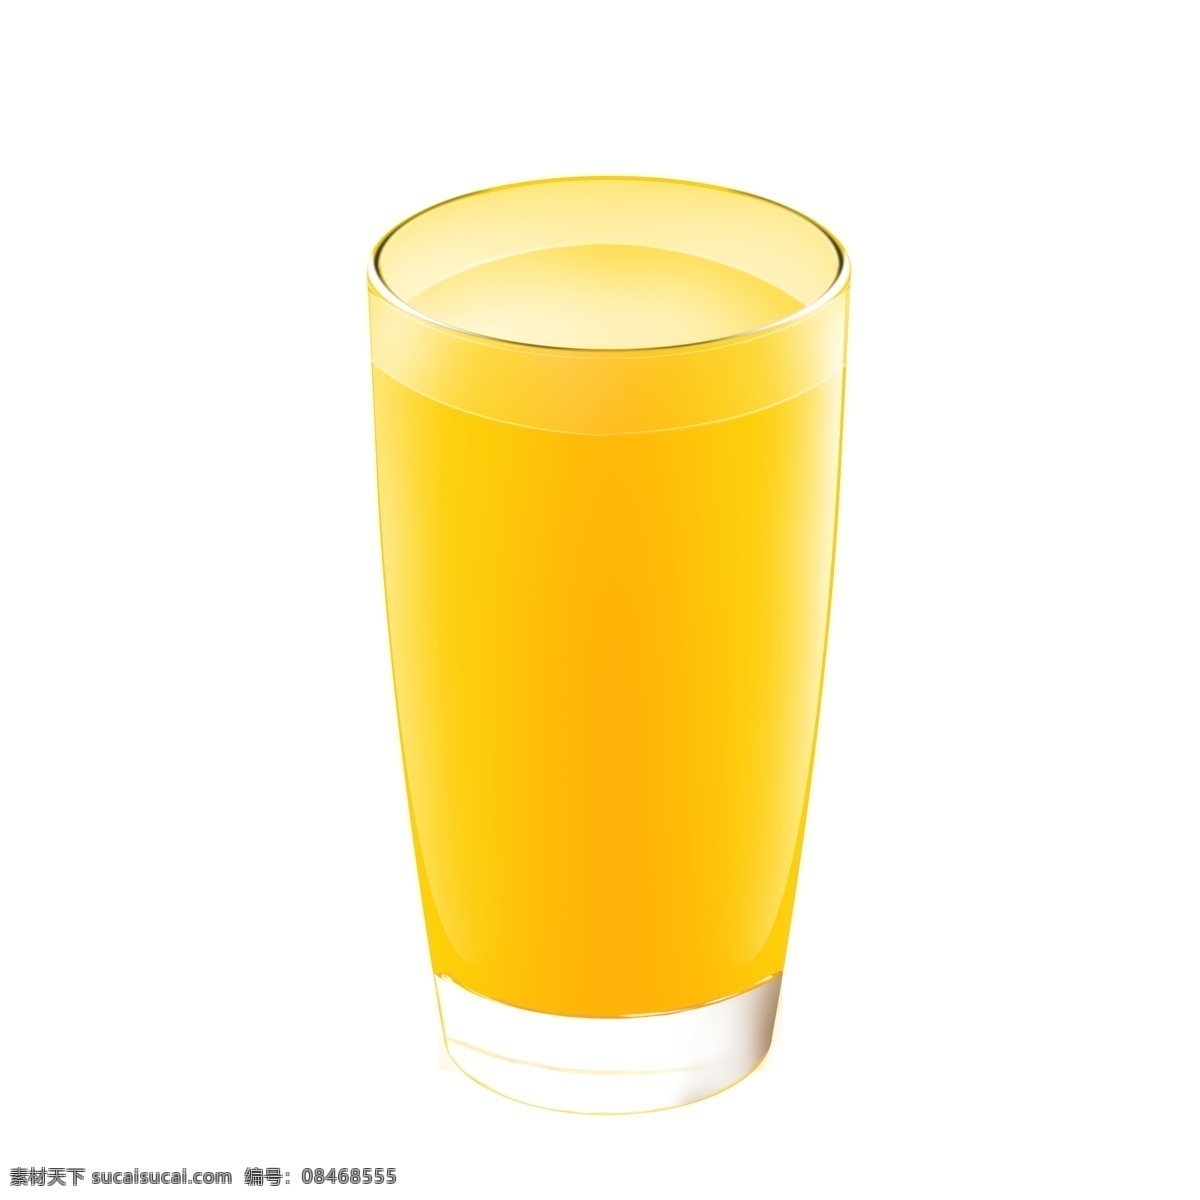 果汁 橙汁 长 杯 金黄色 竖 长杯 竖杯 大杯 金黄色果汁 满满果汁 满满橙汁 大杯果汁 大杯橙汁